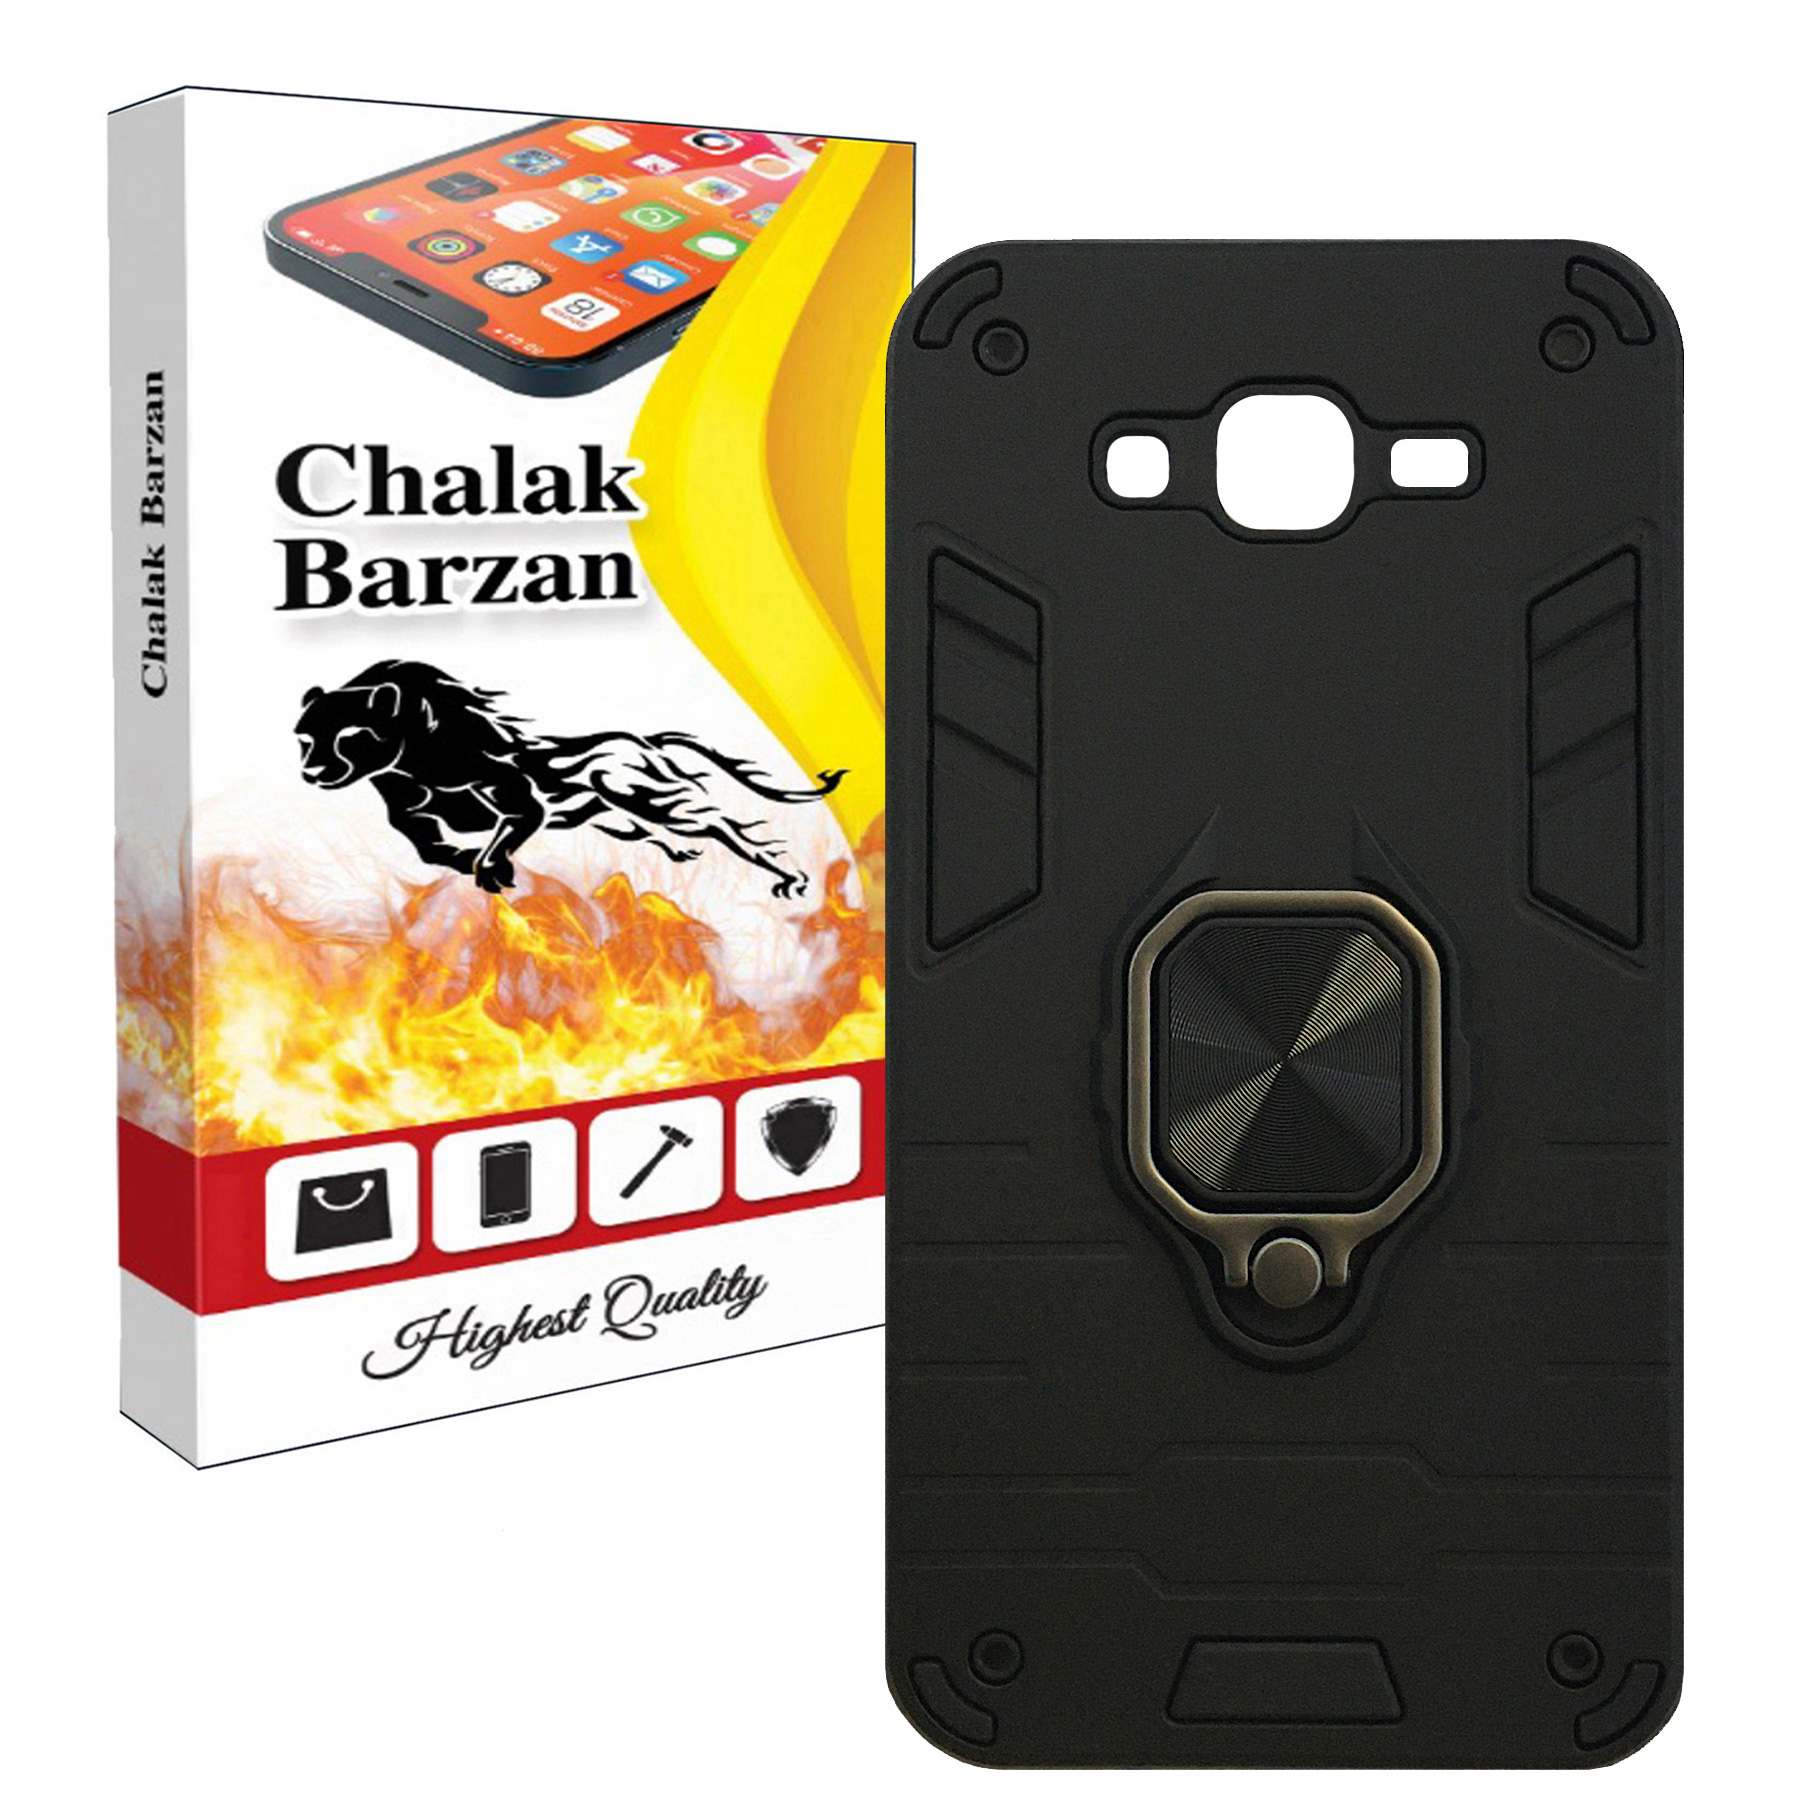 کاور چالاک برزن مدل Chalak 005 مناسب برای گوشی موبایل سامسونگ Galaxy Grand Prime / Grand Prime Plus / J2 Prime